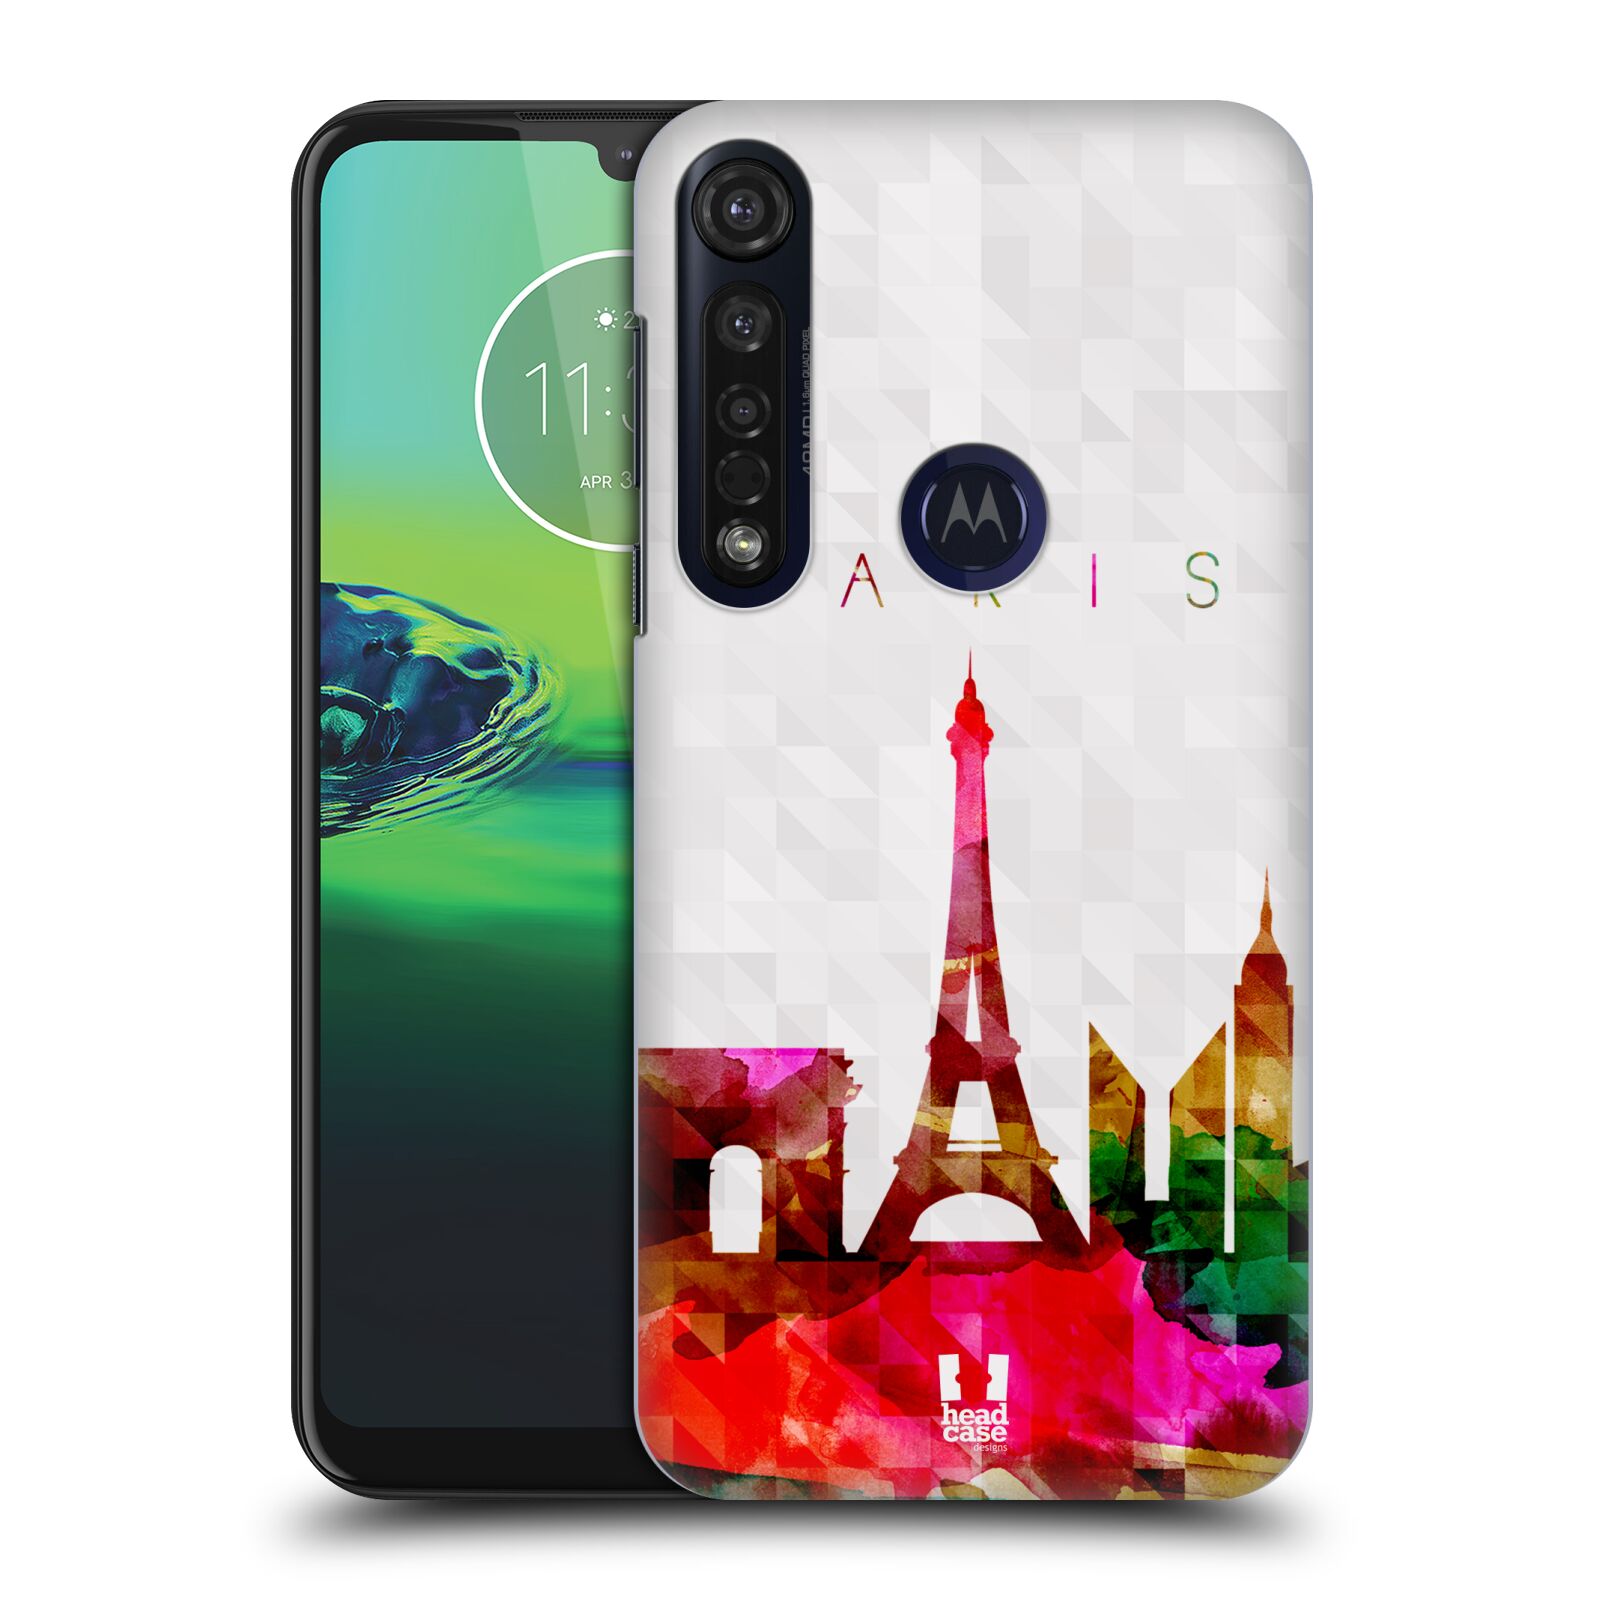 Pouzdro na mobil Motorola Moto G8 PLUS - HEAD CASE - vzor Vodní barva města silueta PAŘÍŽ FRANICE EIFFELOVA VĚŽ